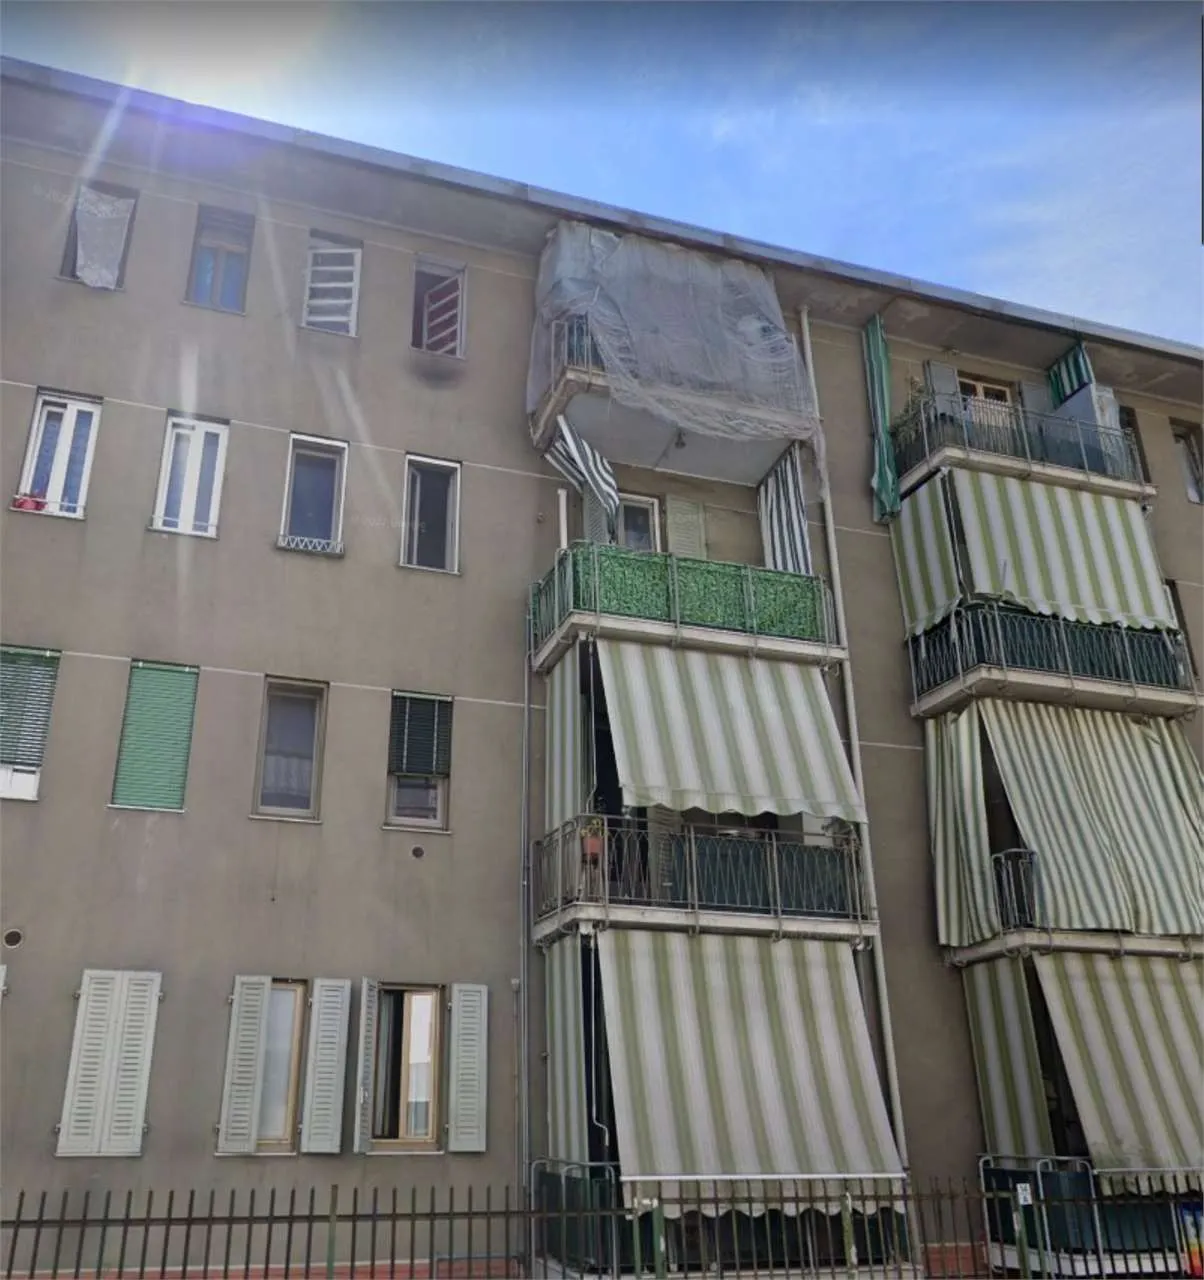 Immagine per Appartamento in asta a Torino via Cruto 18